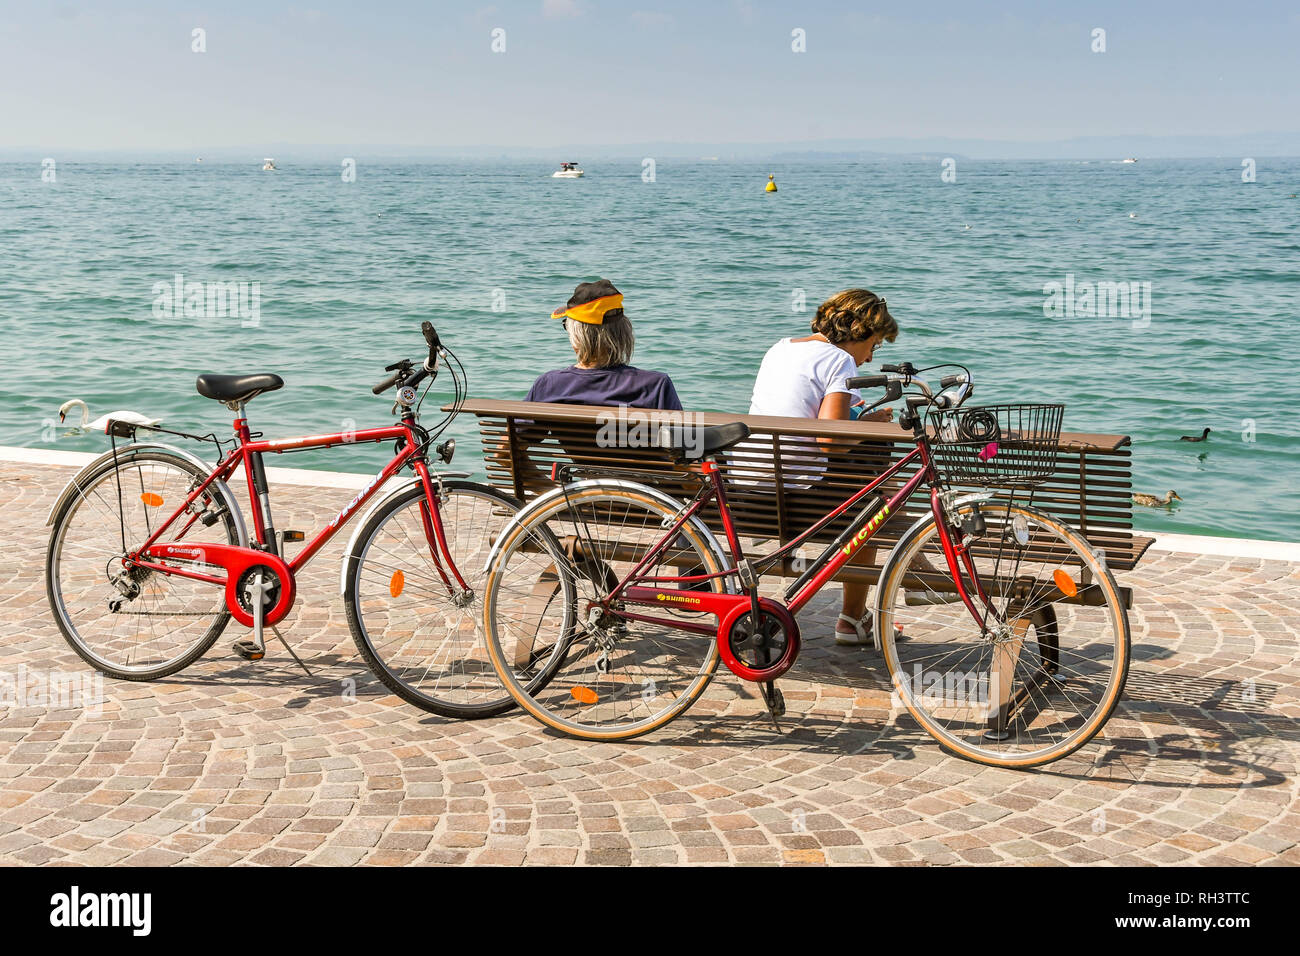 Torri del Benaco, Lac de Garde, ITALIE - Septembre 2018 : deux vélos laissé contre un siège sur la promenade de Lazise sur le lac de garde pendant que leurs cavaliers prennent une pause Banque D'Images